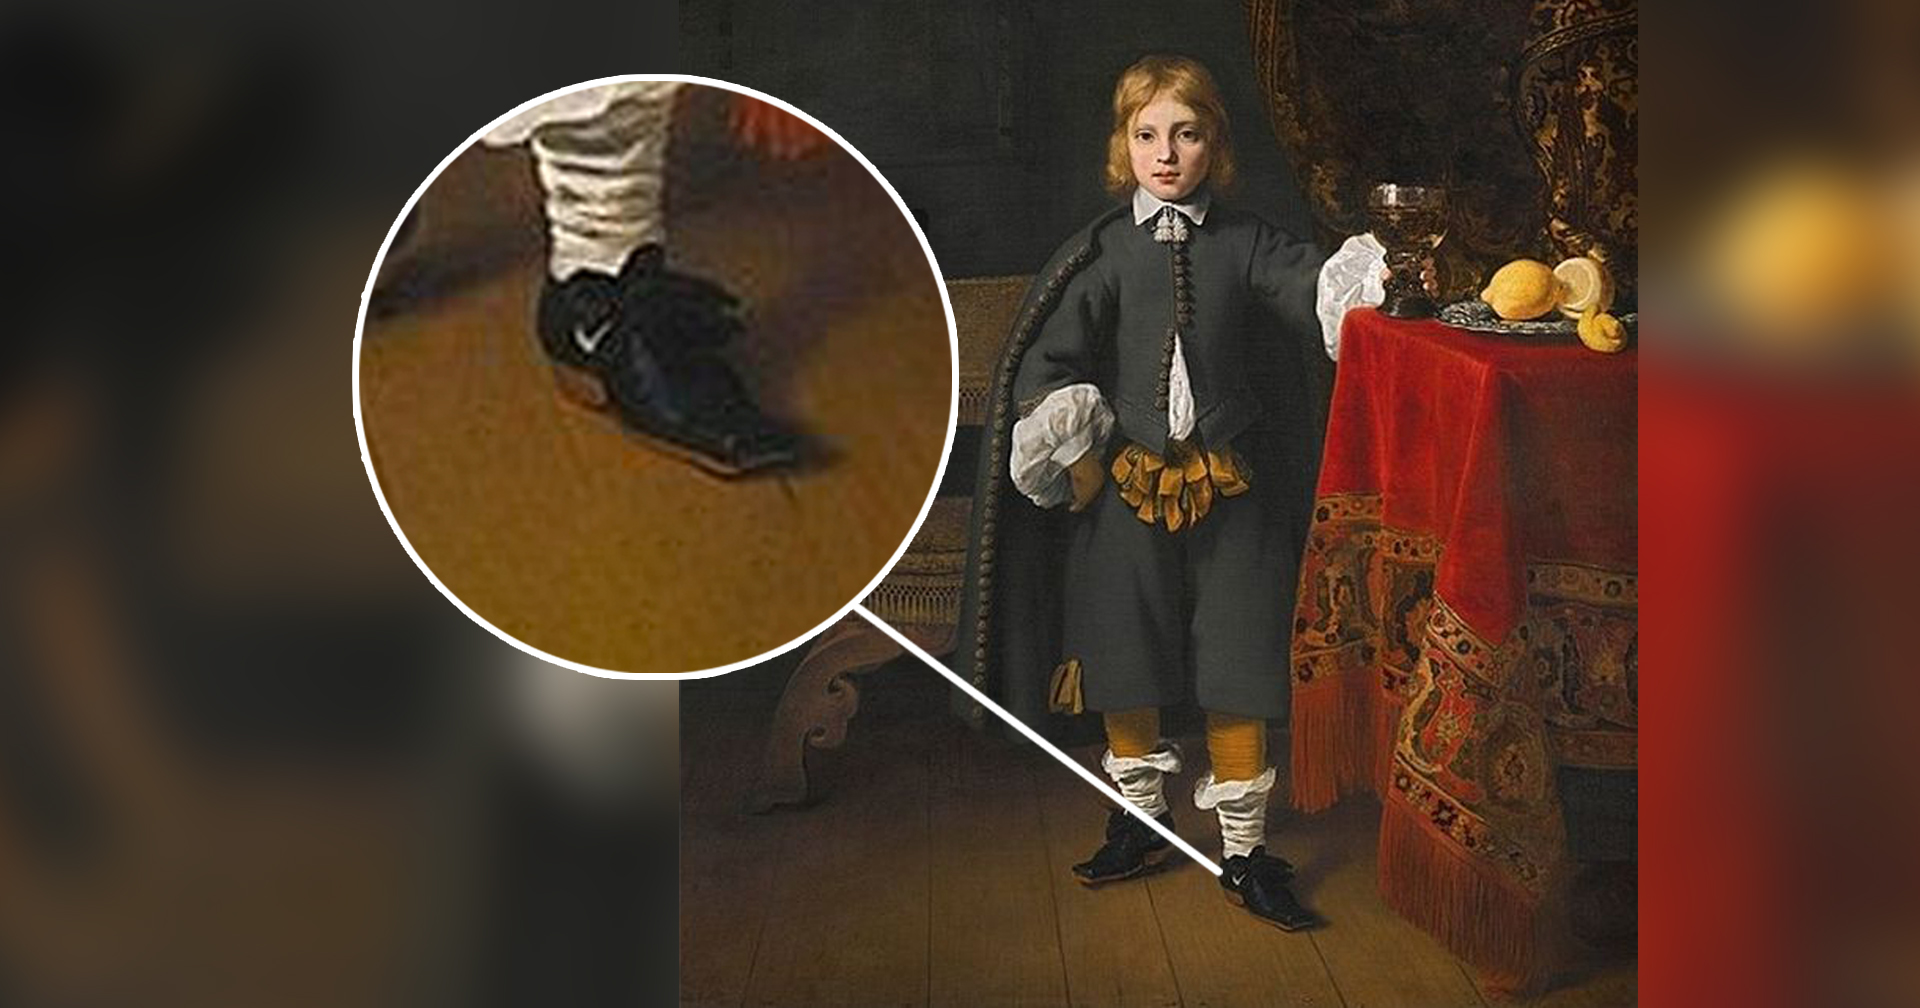 การข้ามเวลามีอยู่จริง? พบโลโก้ ‘Nike’ ในภาพวาดเหมือน ของศิลปินชาวดัตช์อายุกว่า 400 ปี